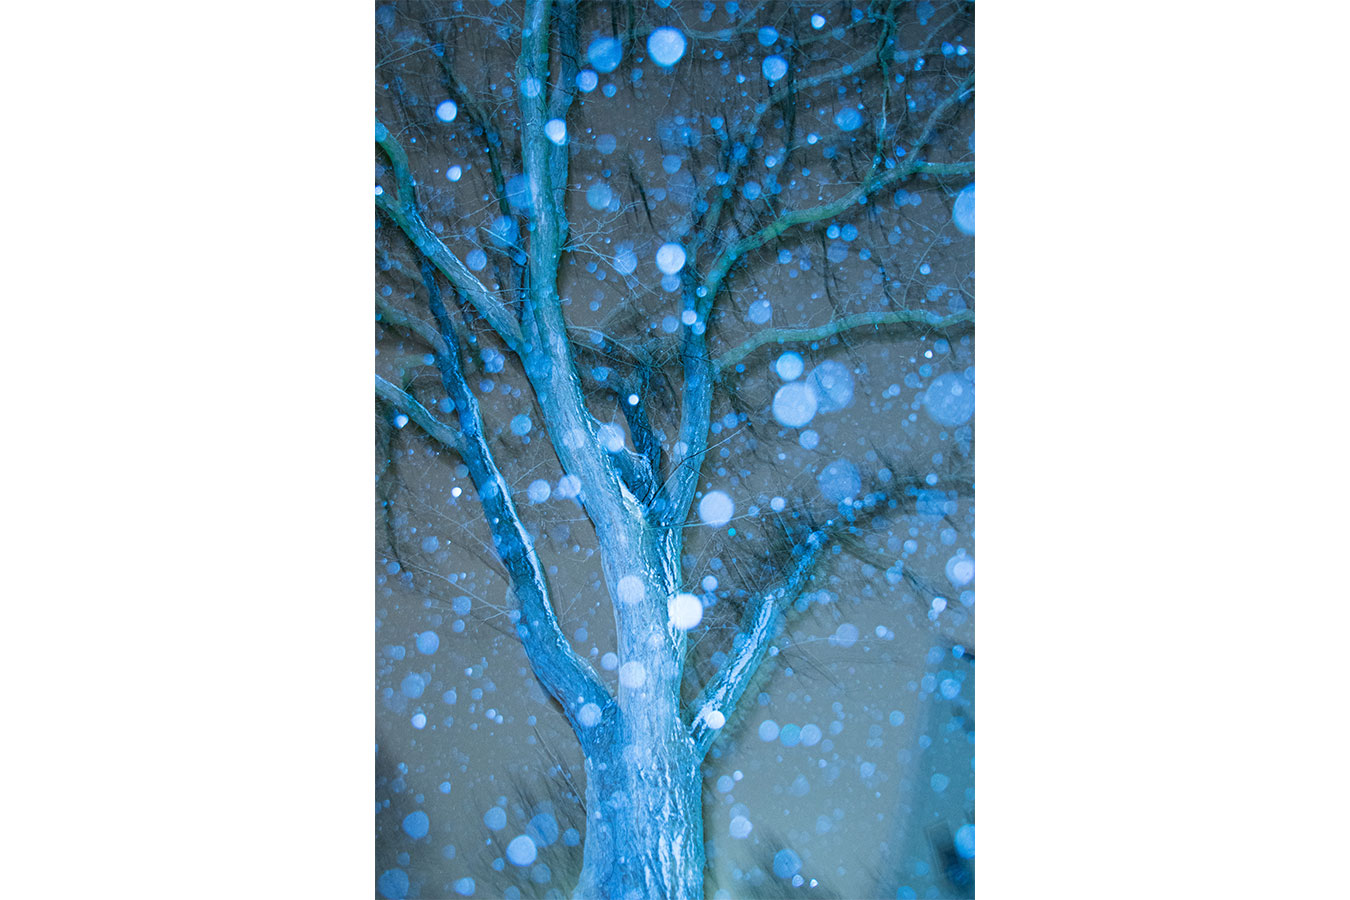 Baum im Schneetreiben, Bokeh